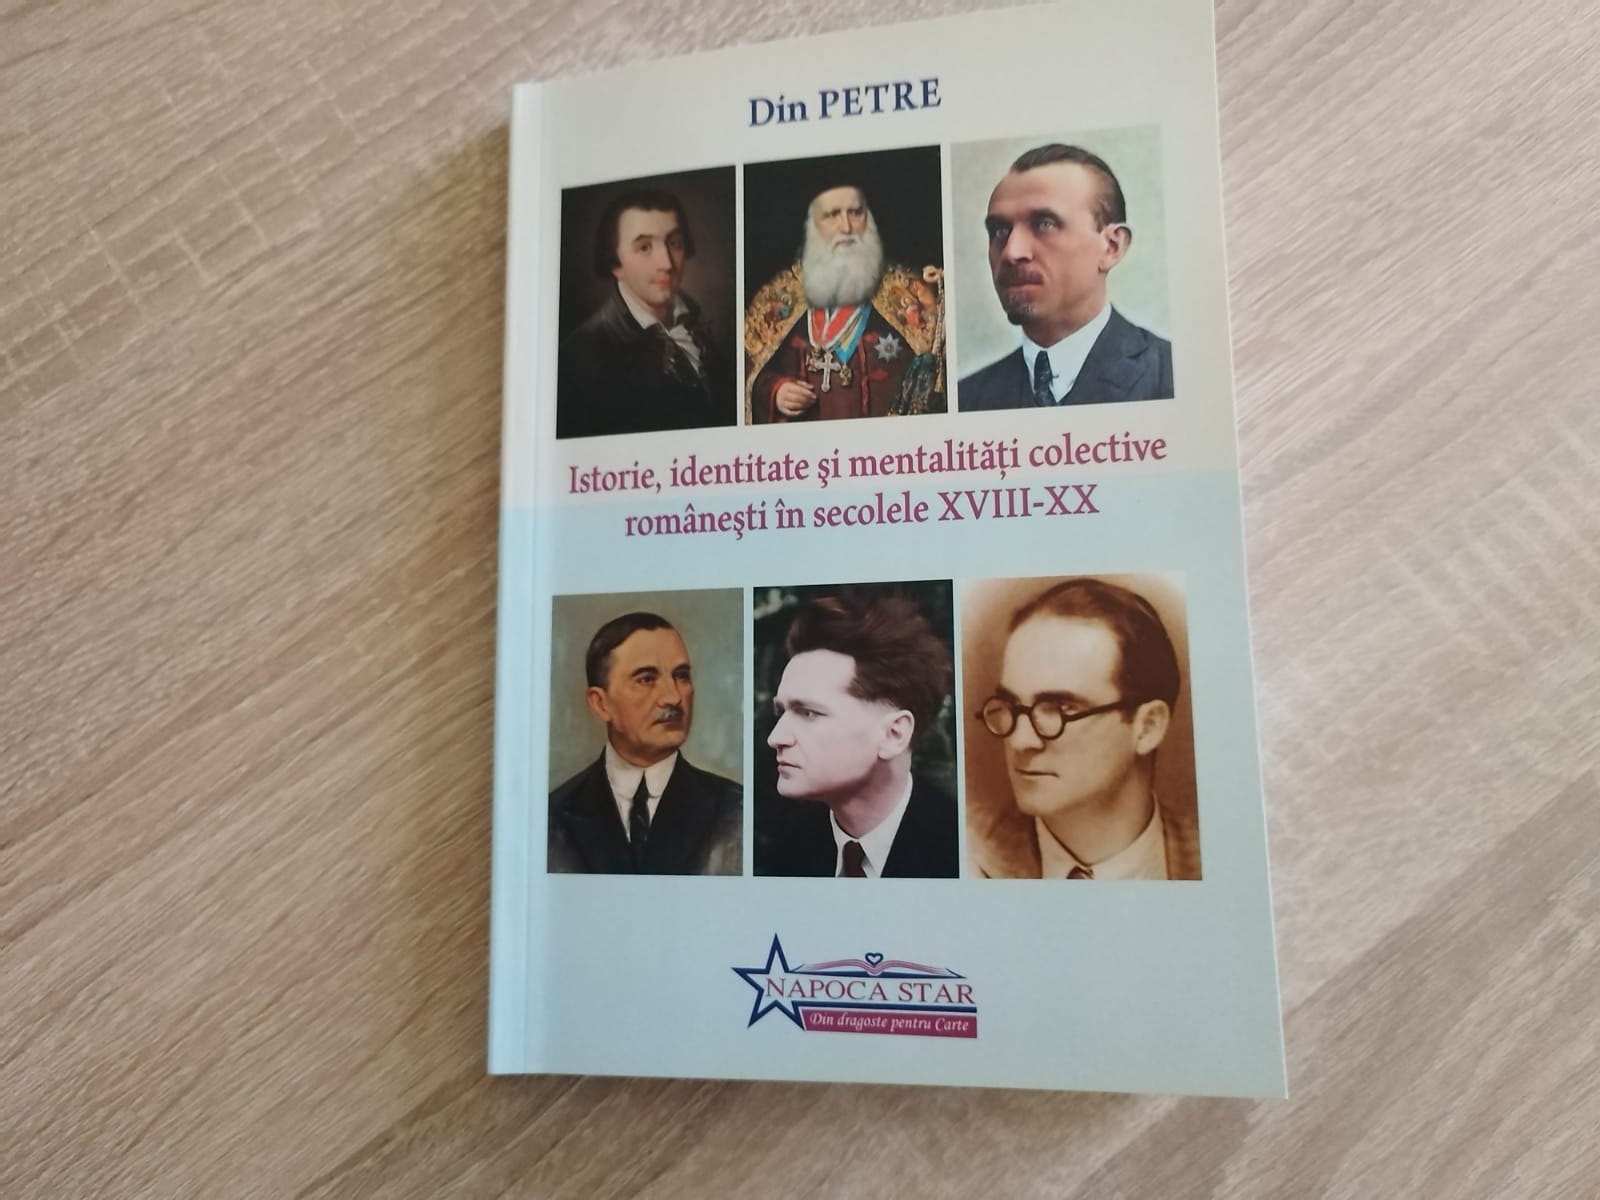 „Istorie, identitate și mentalități colective românești în secolele XVIII-XX”, o carte document scrisă de profesorul Petre Din